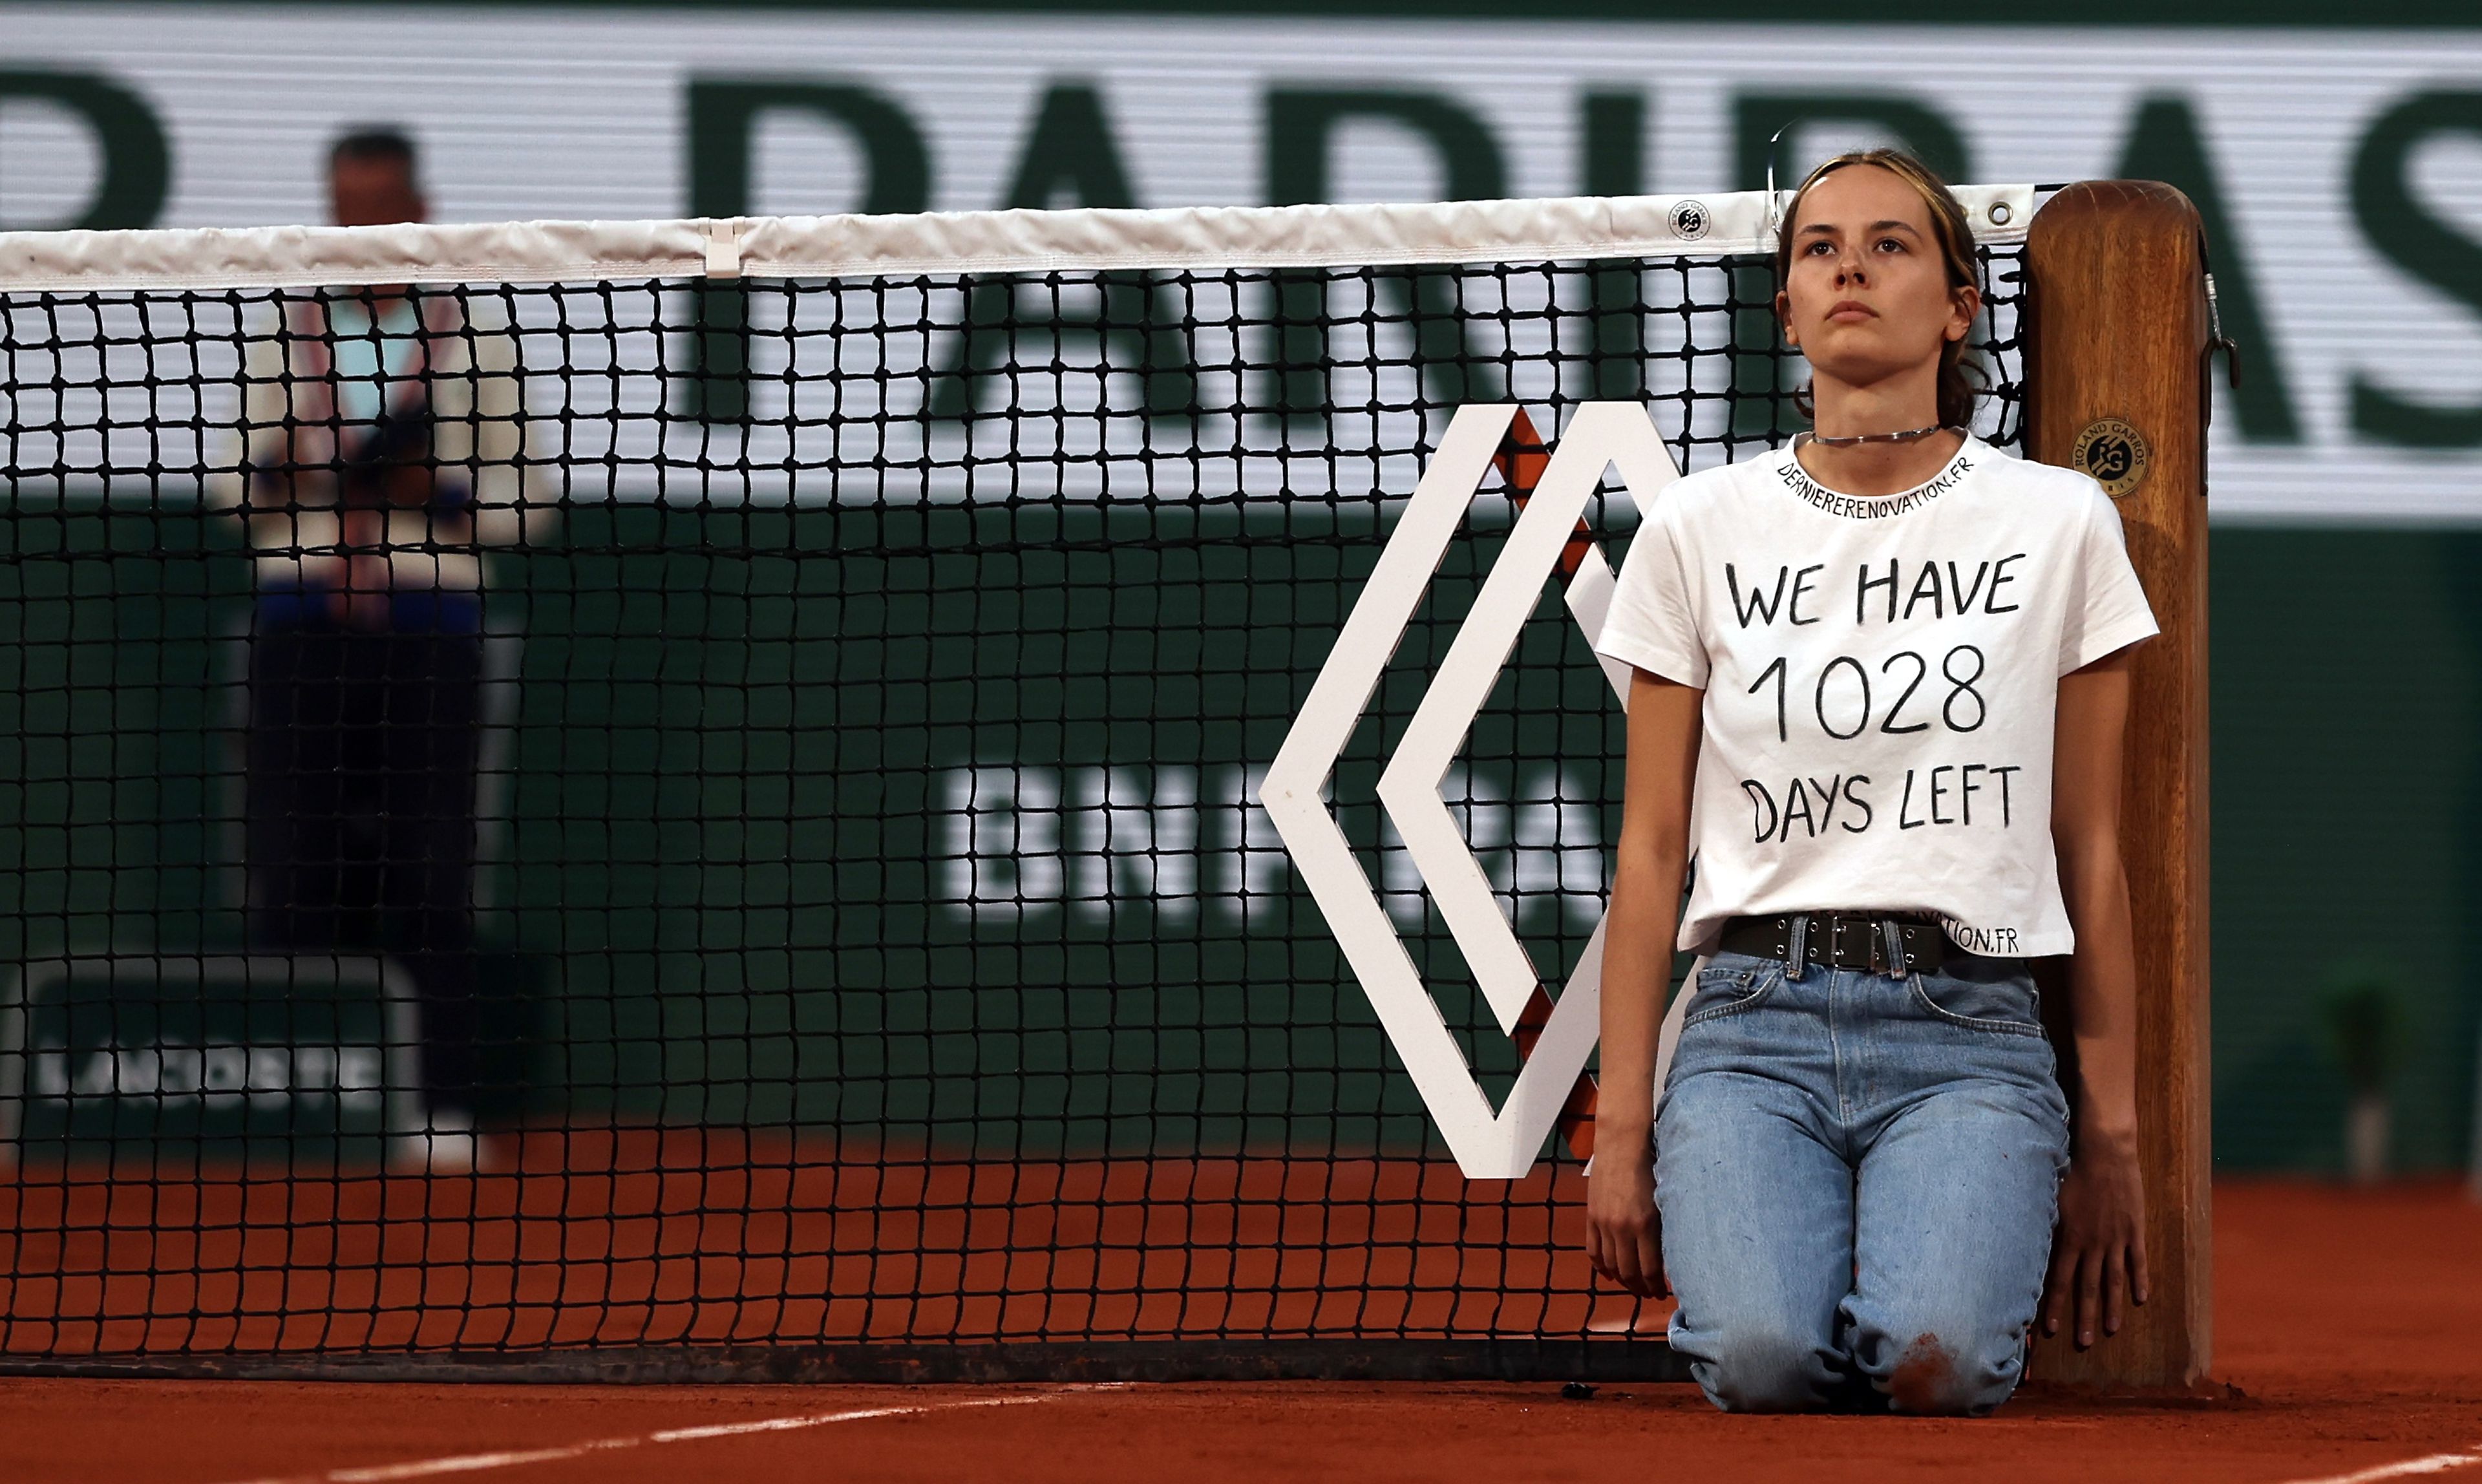 Egy nő láncolta oda magát a hálóhoz a Roland Garros férfi elődöntőjének szünetében, a klímaváltozás ellen tüntetett / Fotó: EPA